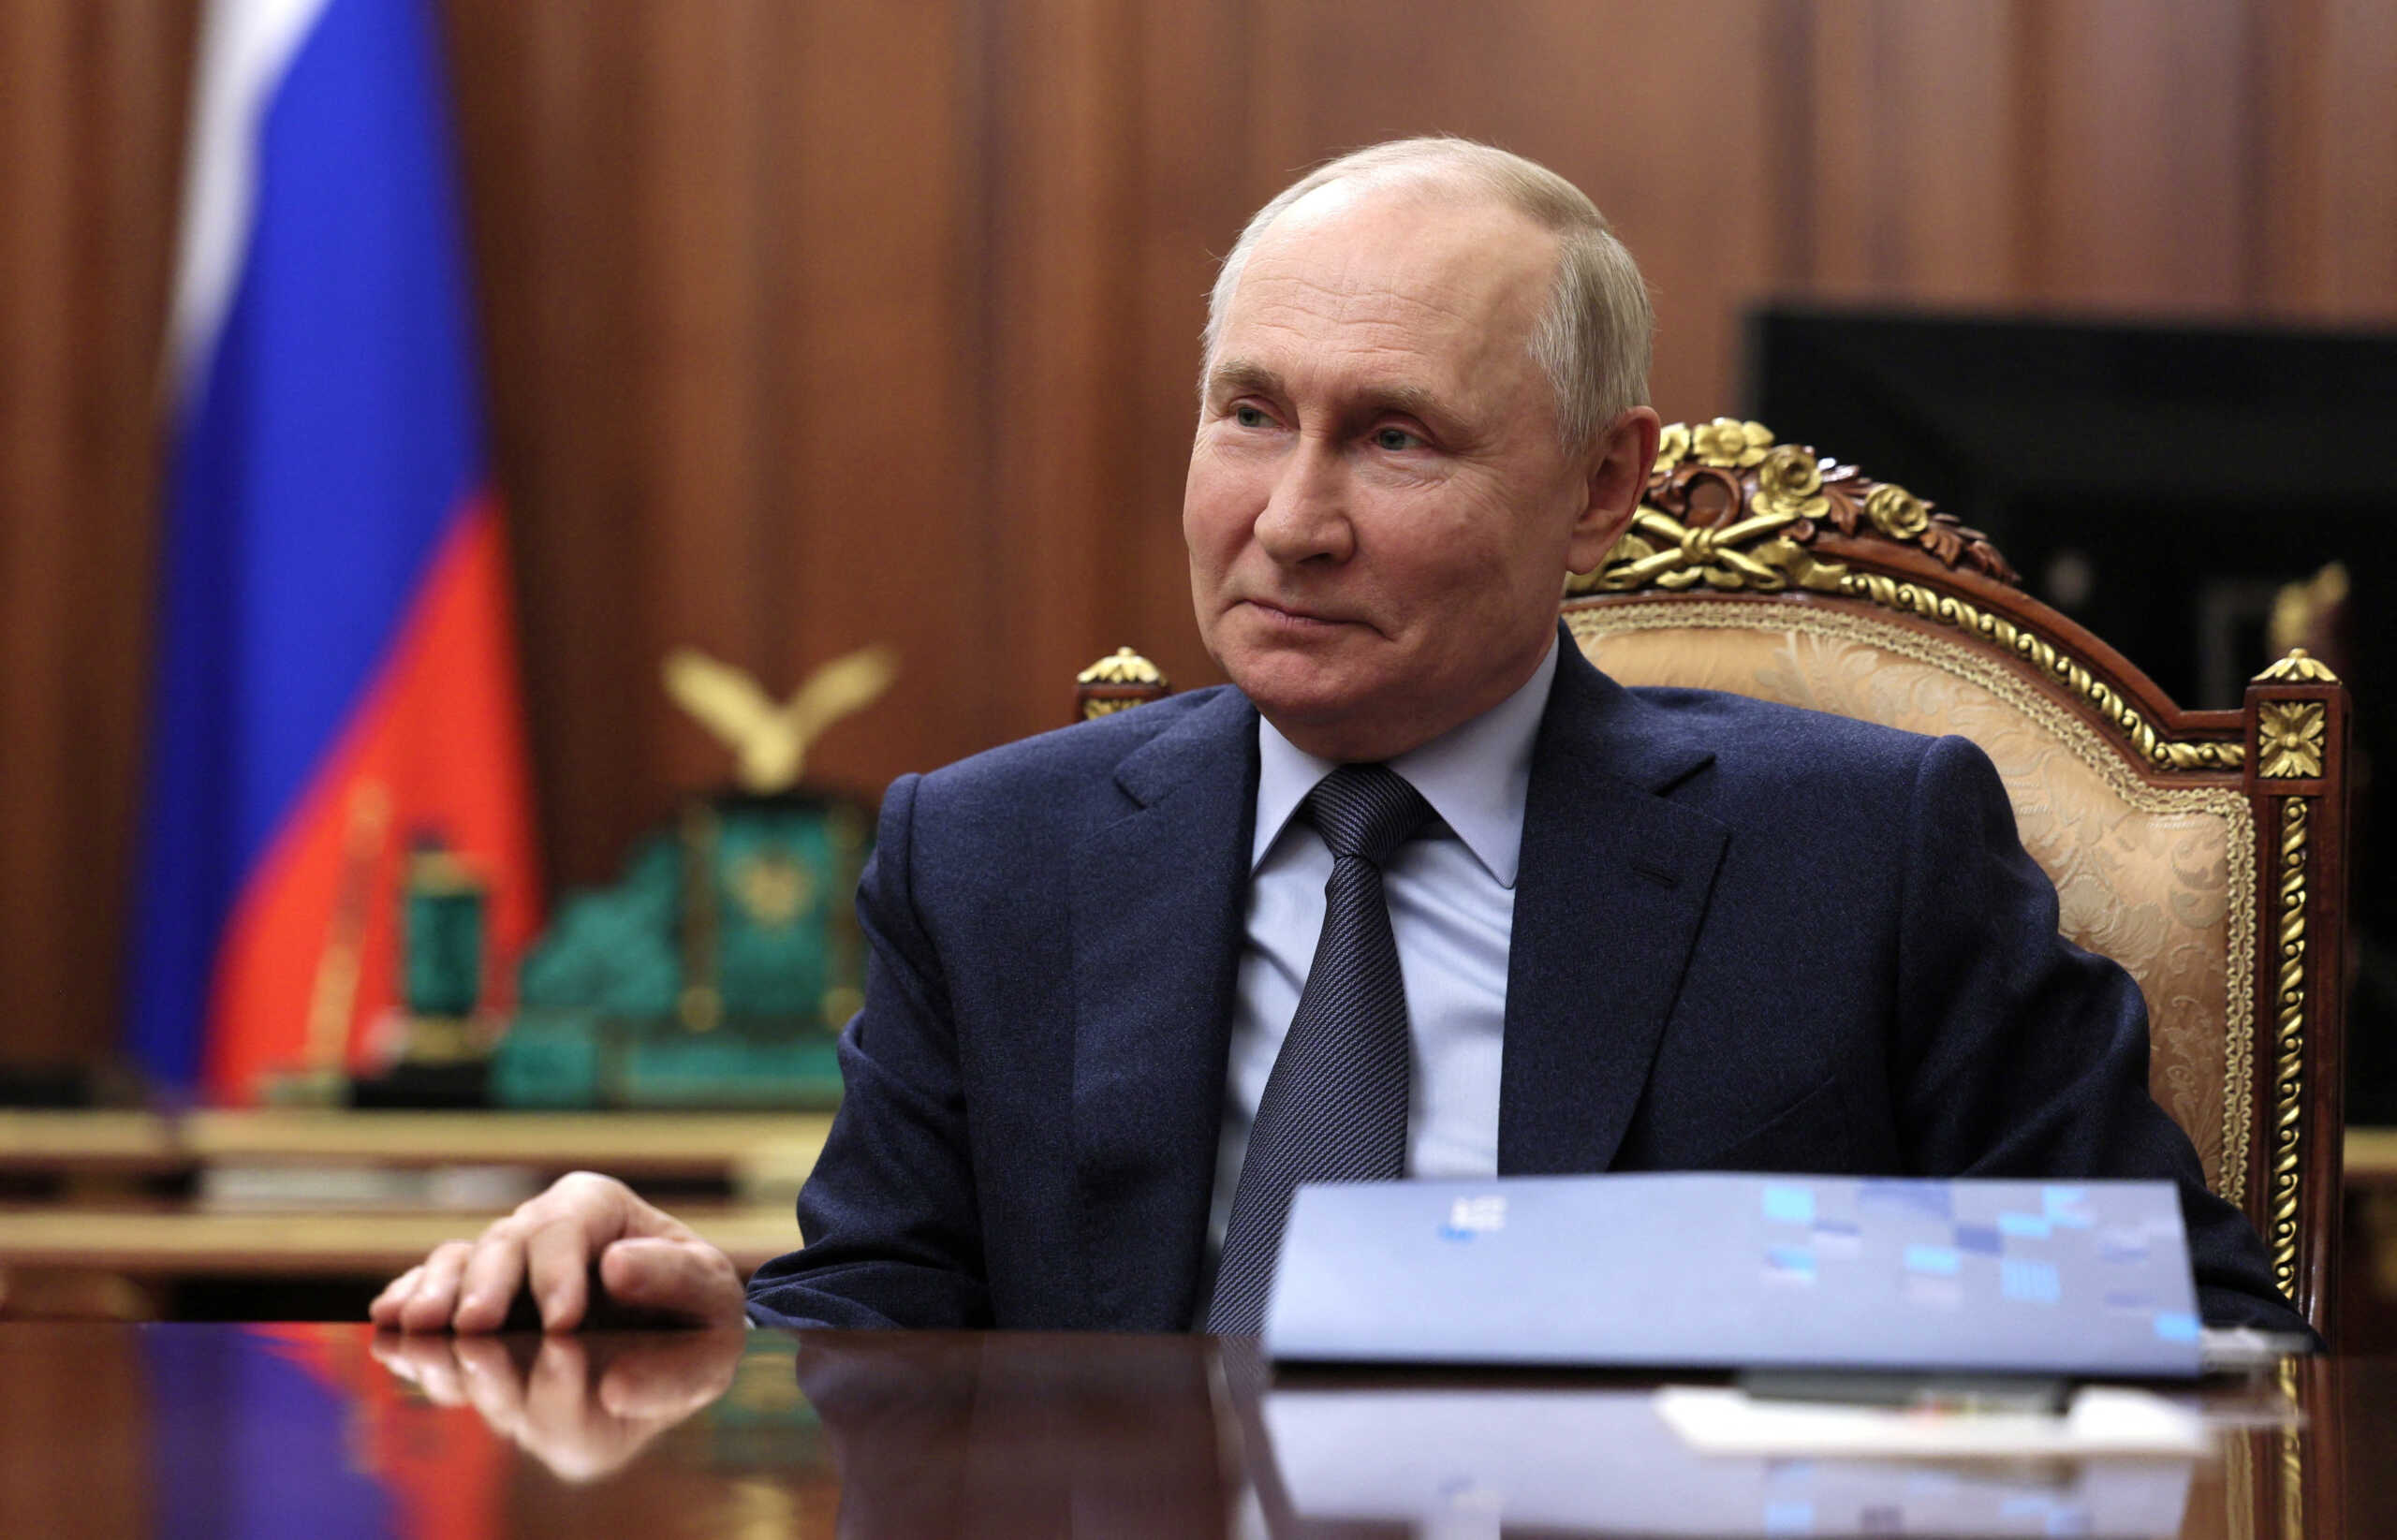 Ο Βλαντιμίρ Πούτιν δεν θα τελειώσει τον πόλεμο με την Ουκρανία πριν τις εκλογές του 2024 εκτιμούν οι ΗΠΑ